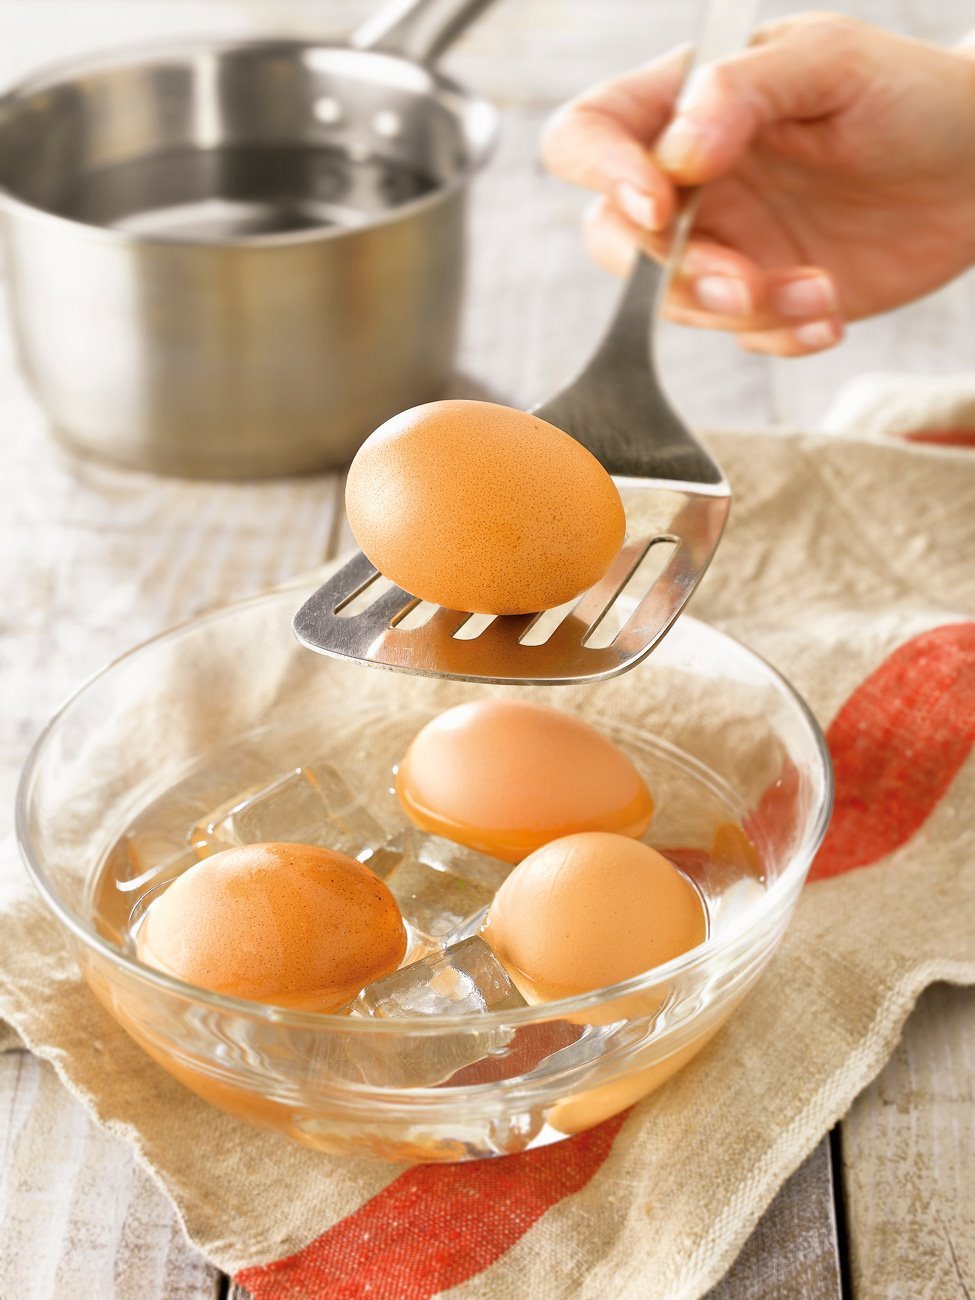 3. Cuece y refresca los huevos